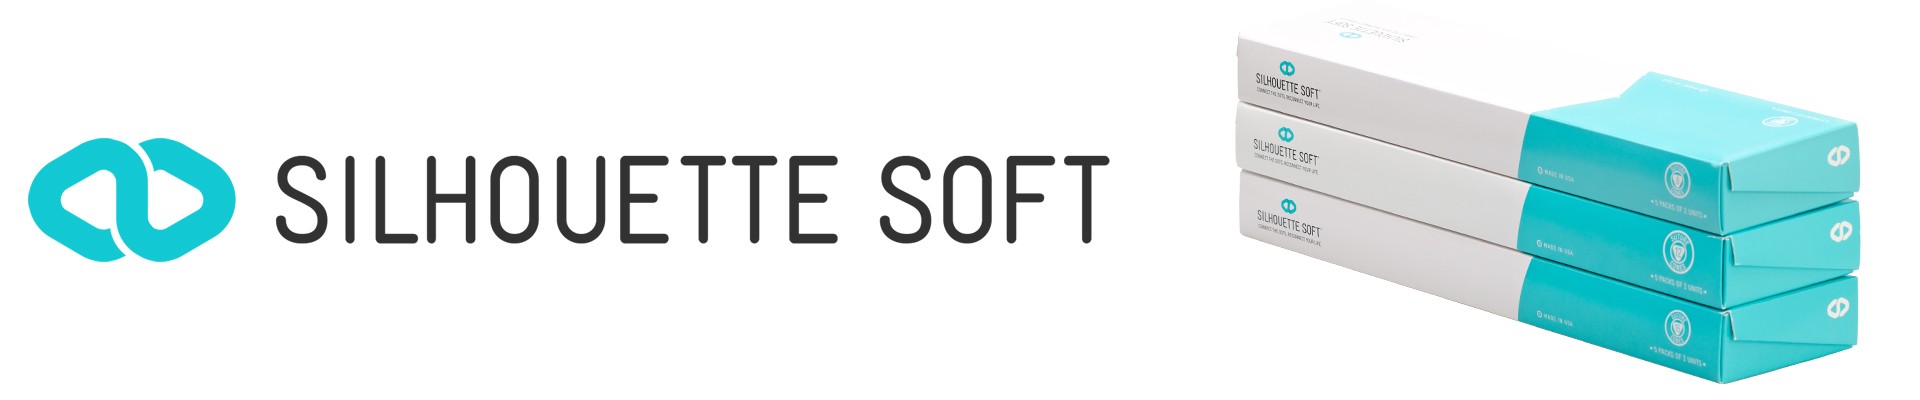 Silhouette Soft – Fire resorbabile pentru eliminarea laxitatii cutanate